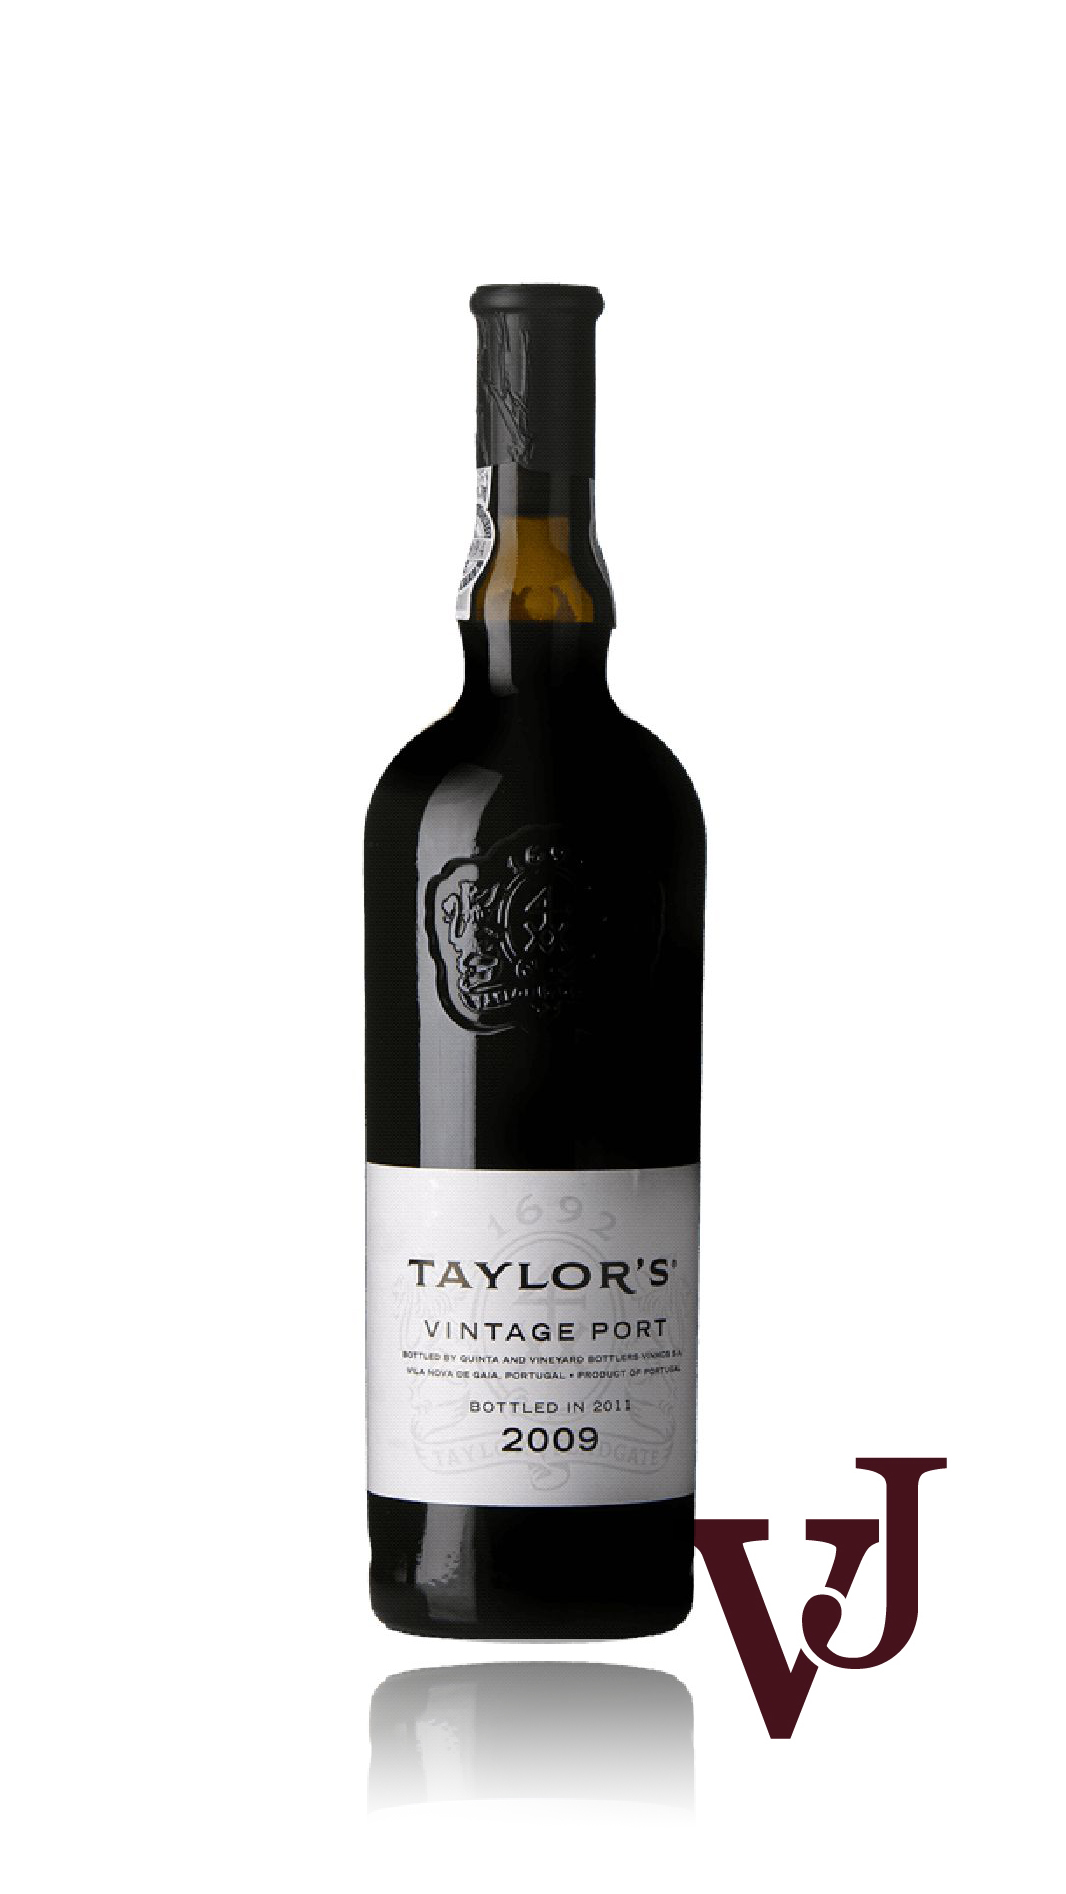 Rött Vin - Taylor's Vintage Port 2009 artikel nummer 9339701 från producenten Taylor's från Portugal